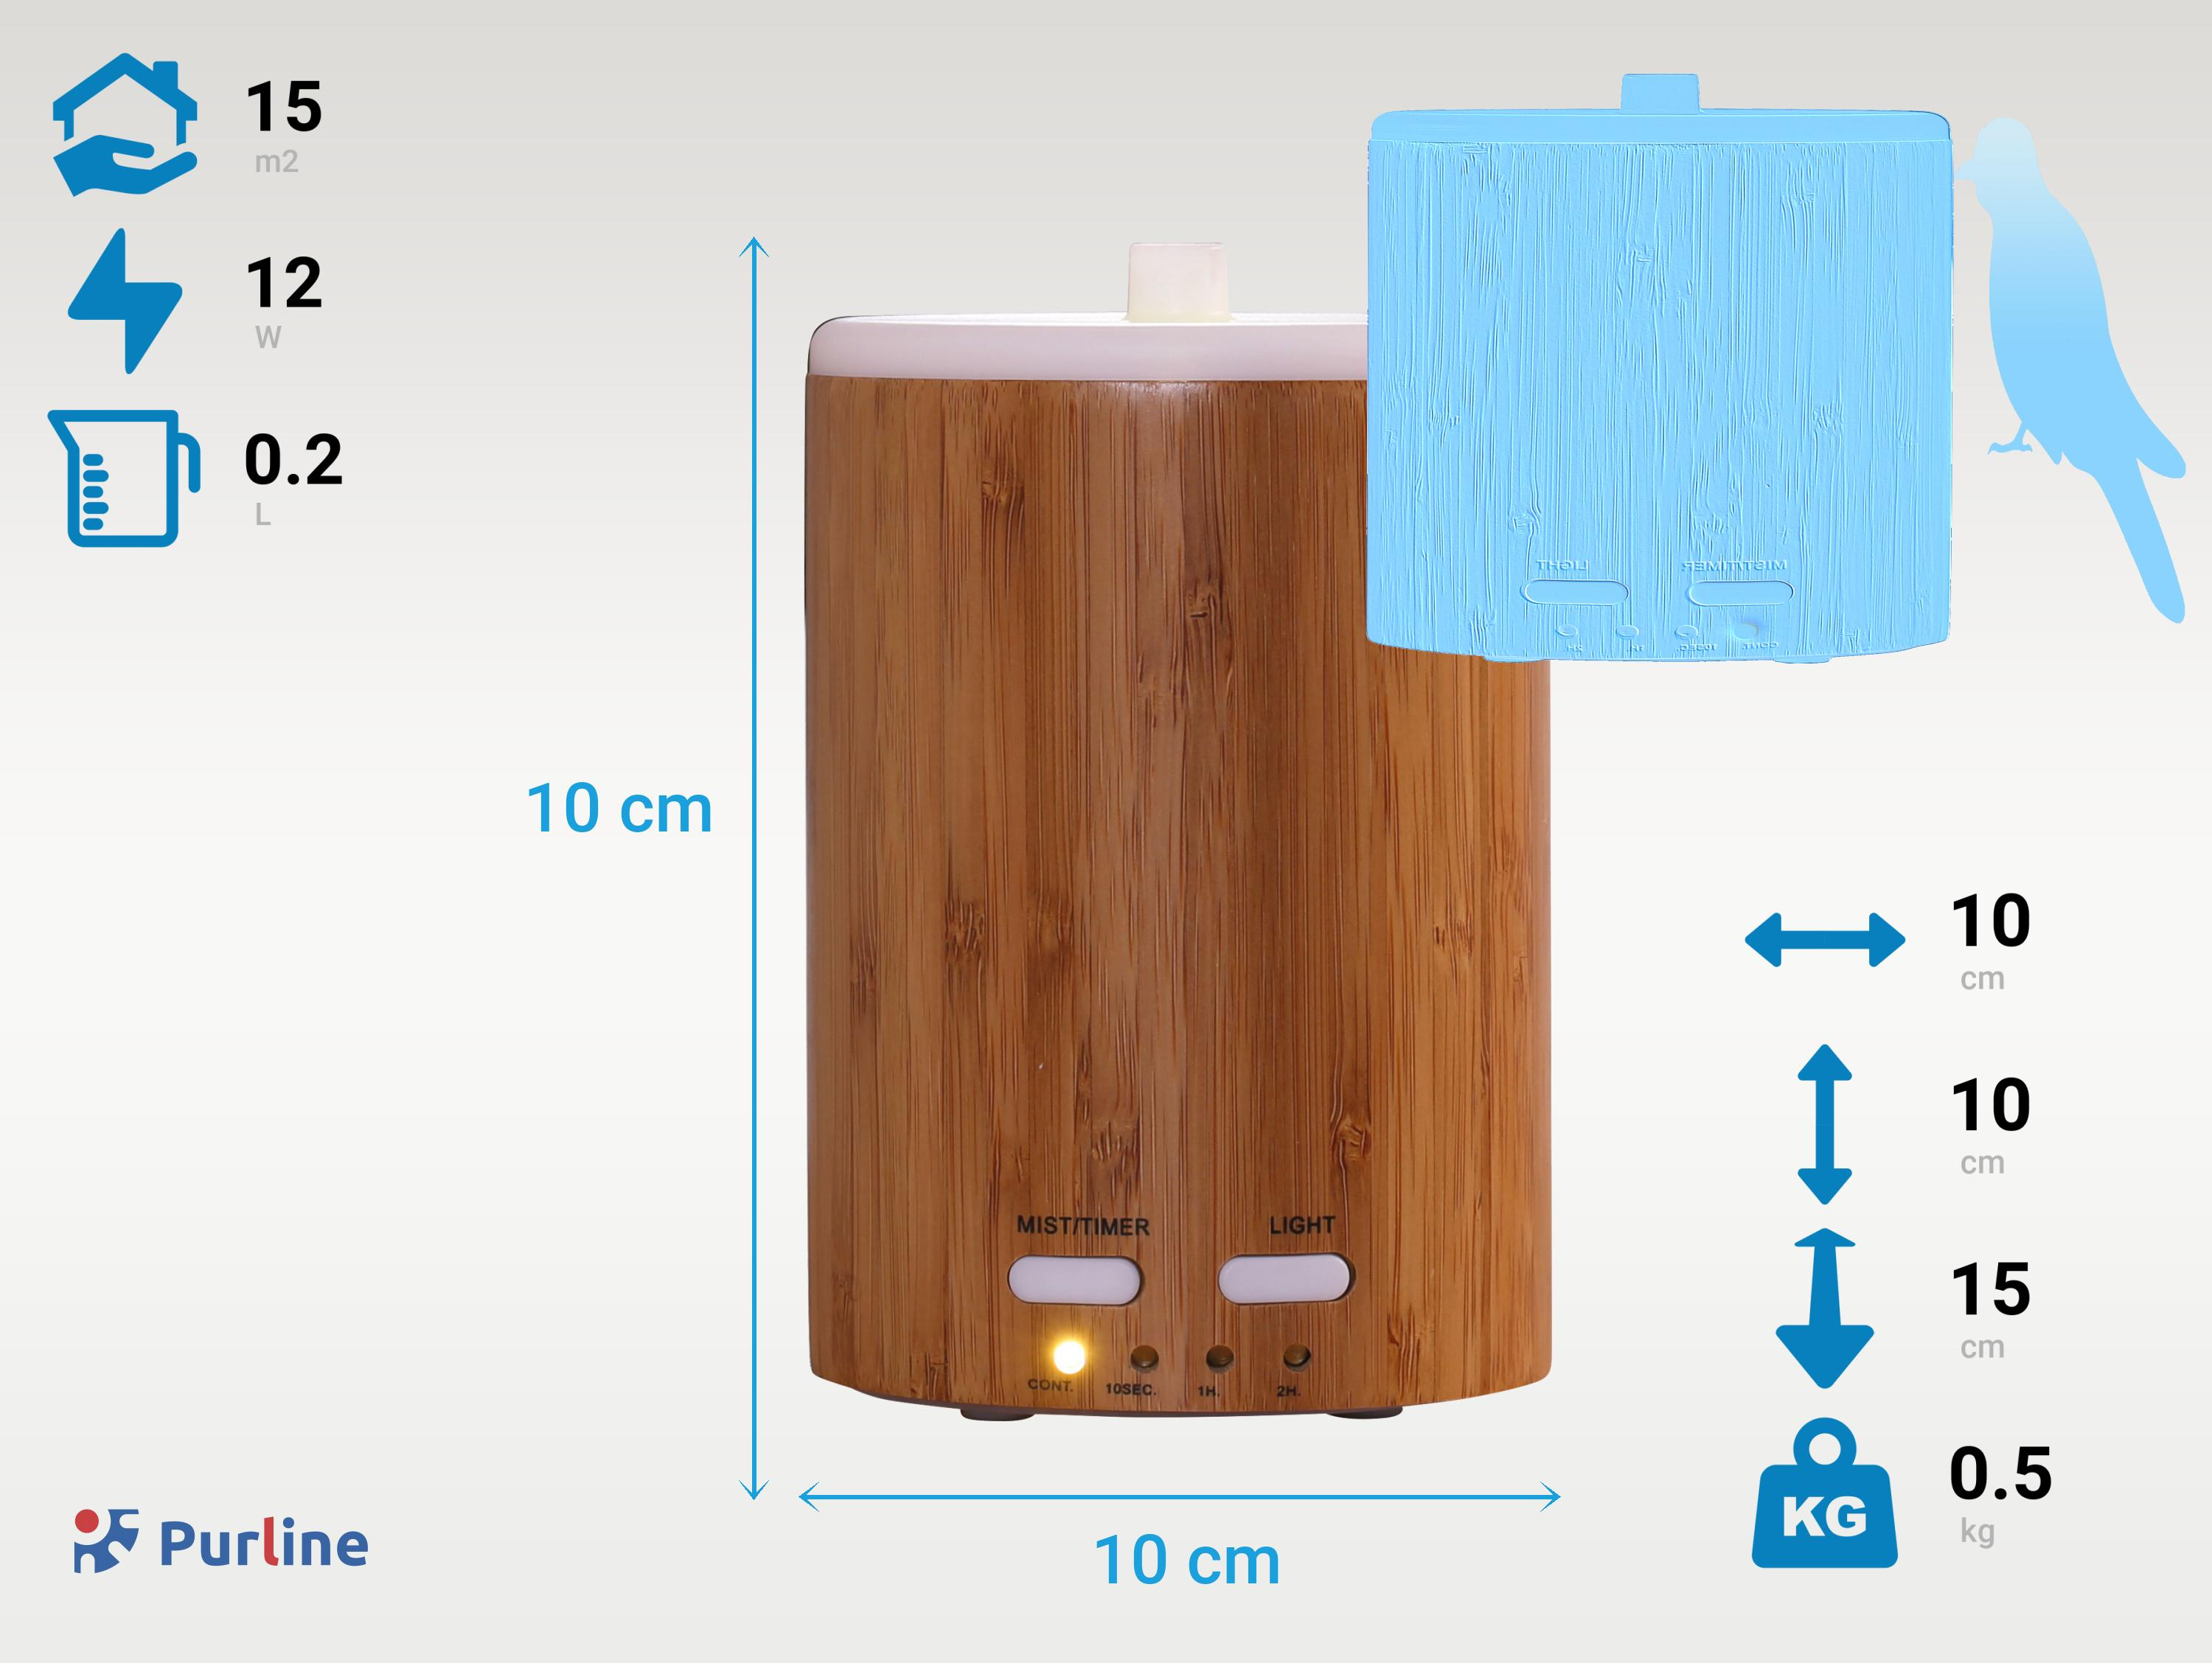 PURLINE Bambus-Ultraschall-Aroma-Diffusor 12W mit LED-Lichtwähler 15 (12 Diffuser Raumgröße: m²) Watt, Aroma Braun